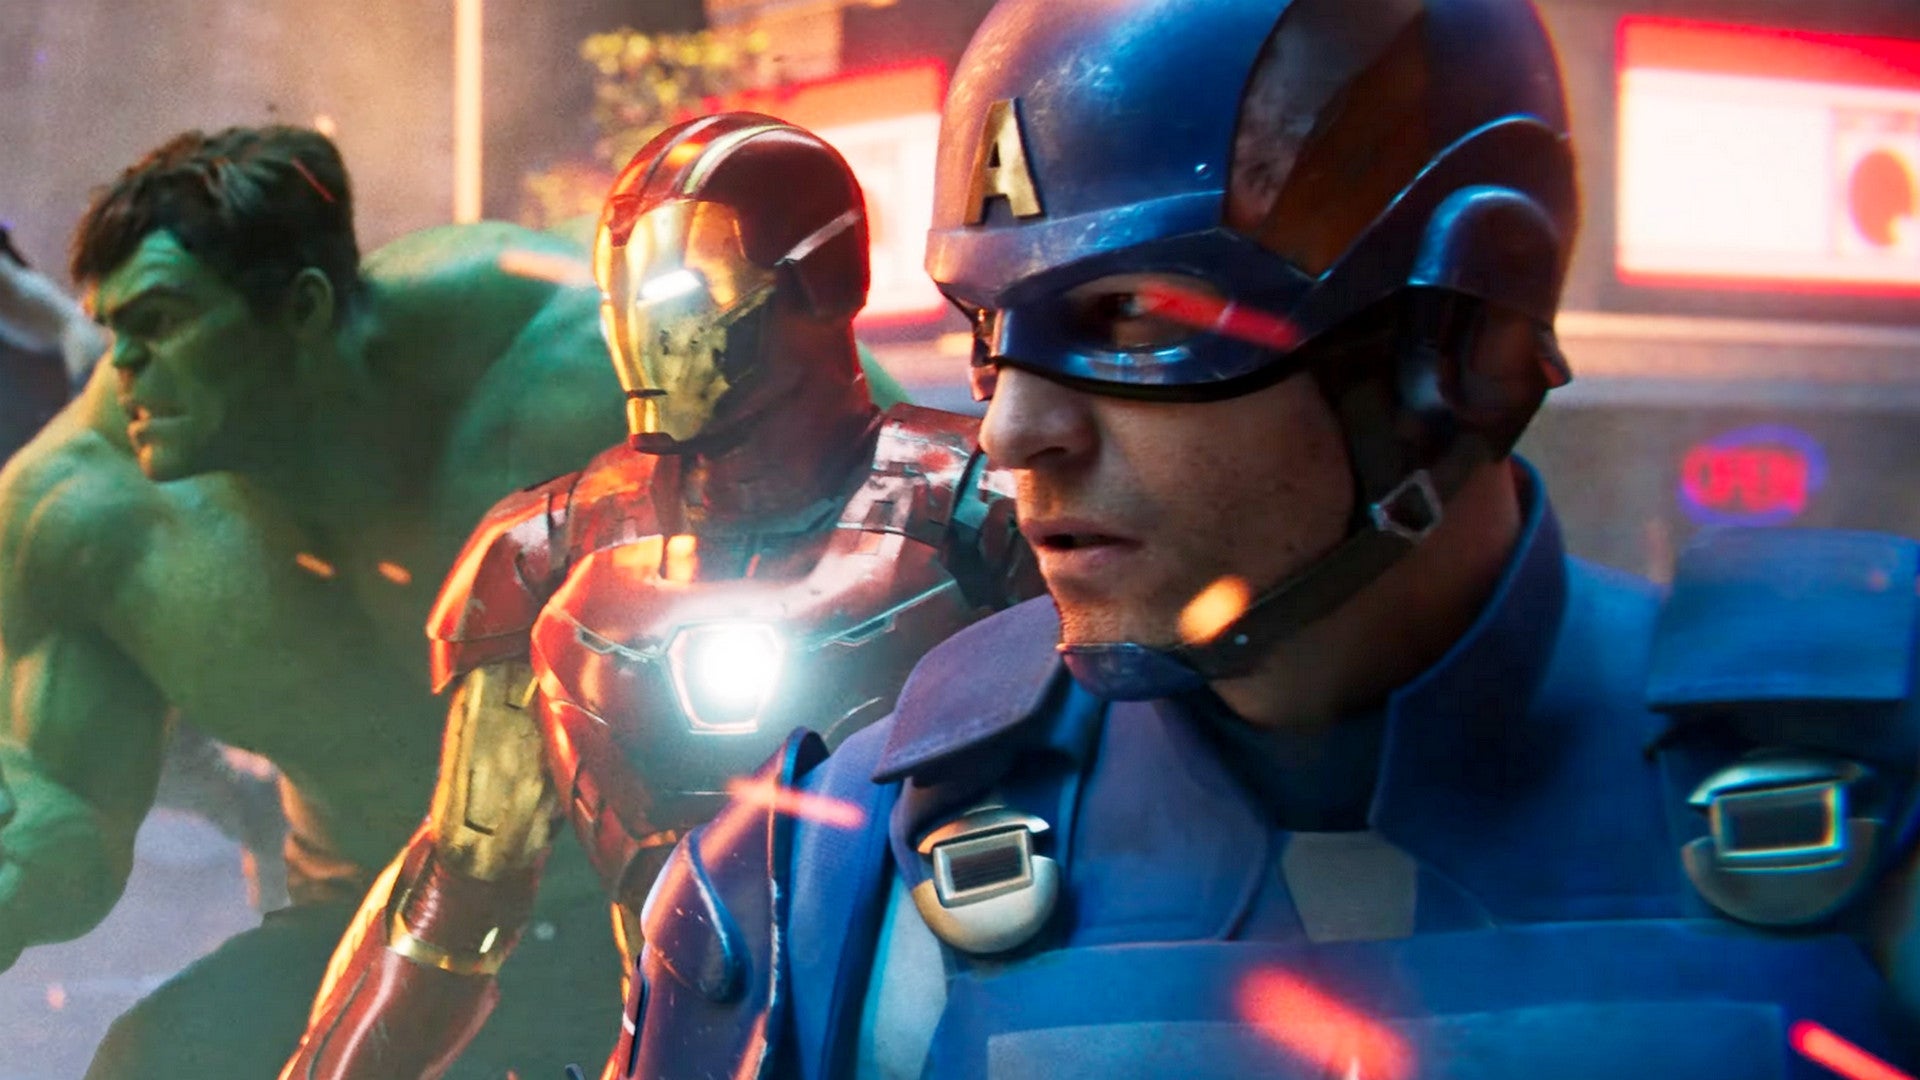 Bilder zu Marvel's Avengers: Wie geht es mit dem Spiel weiter? Embracer äußert sich